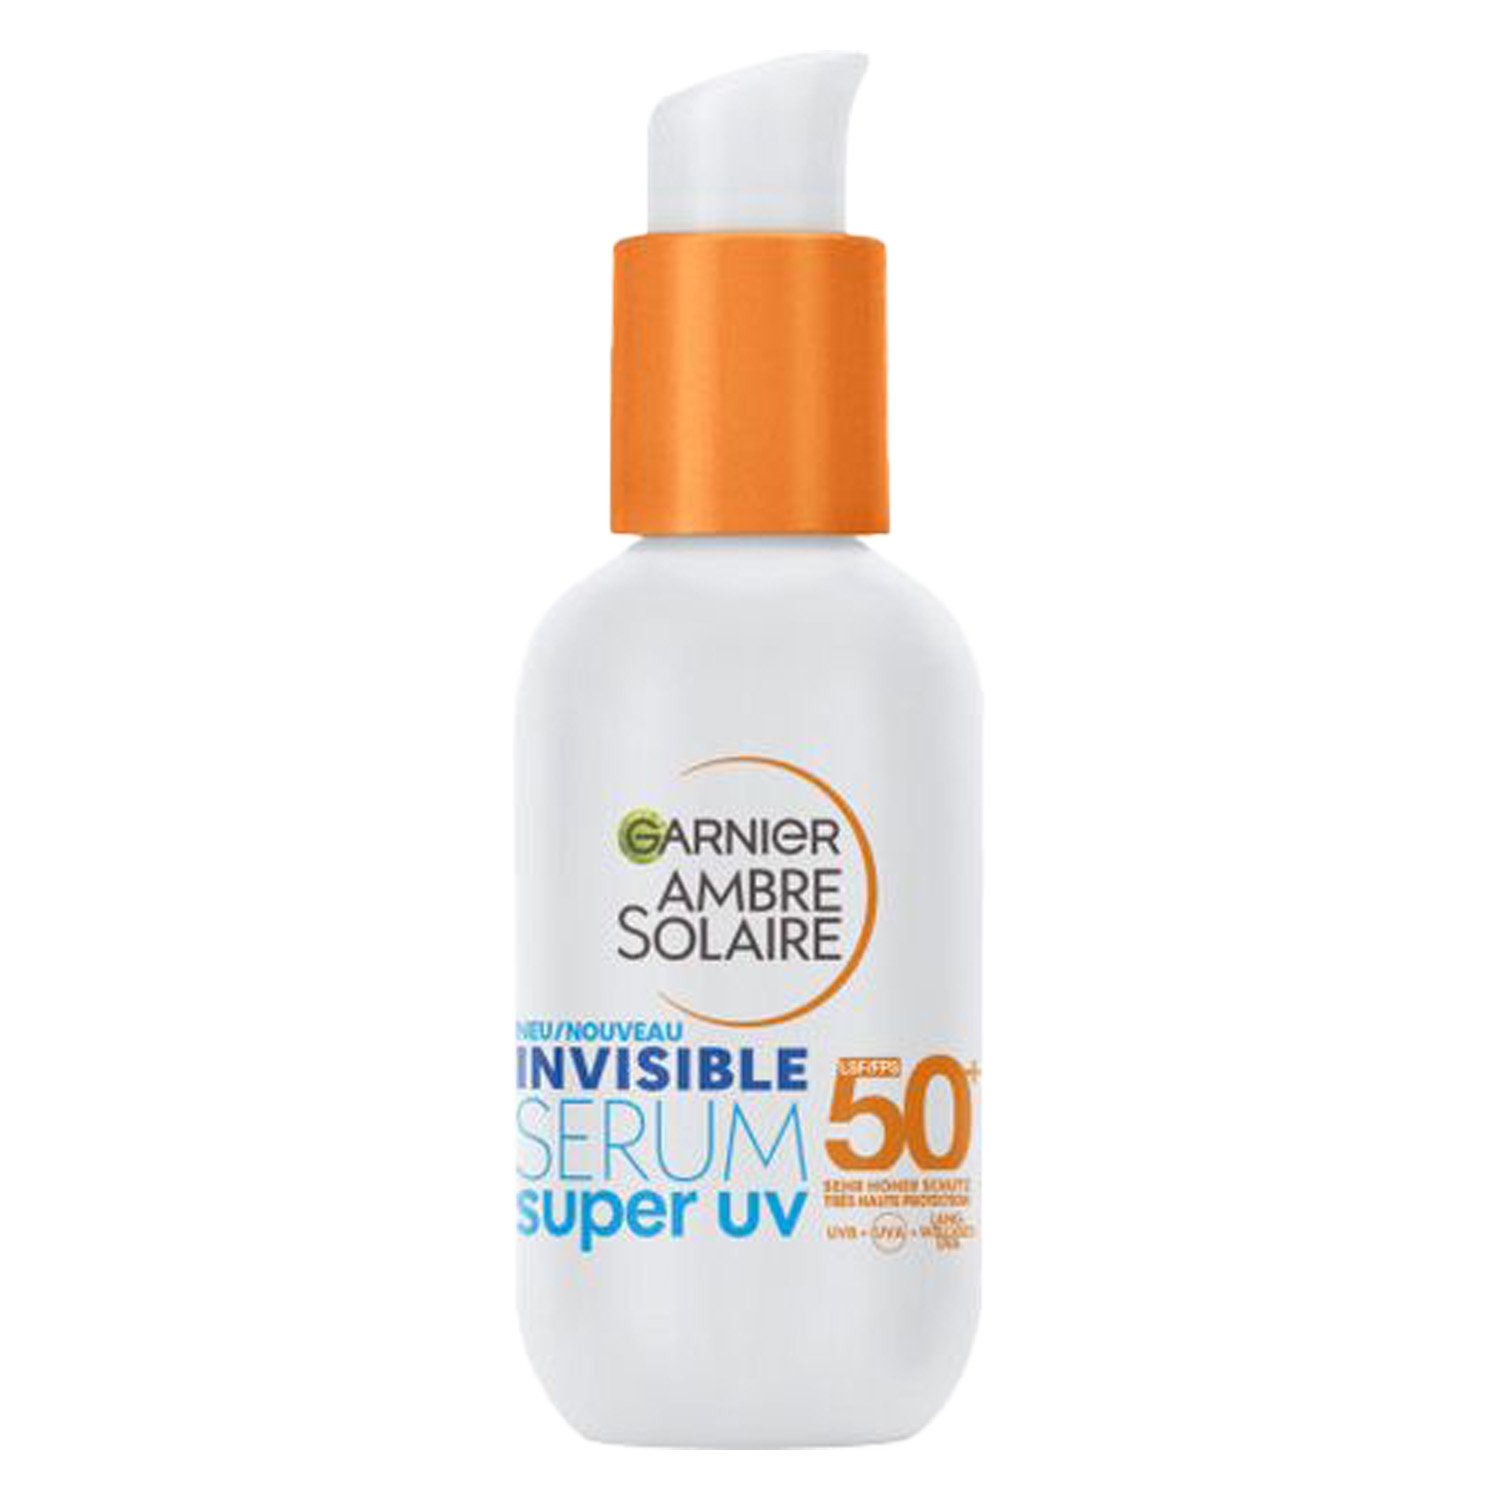 Produktbild von Ambre Solaire - Invisible Serum Super UV Sonnenschutz-Serum LSF 50+